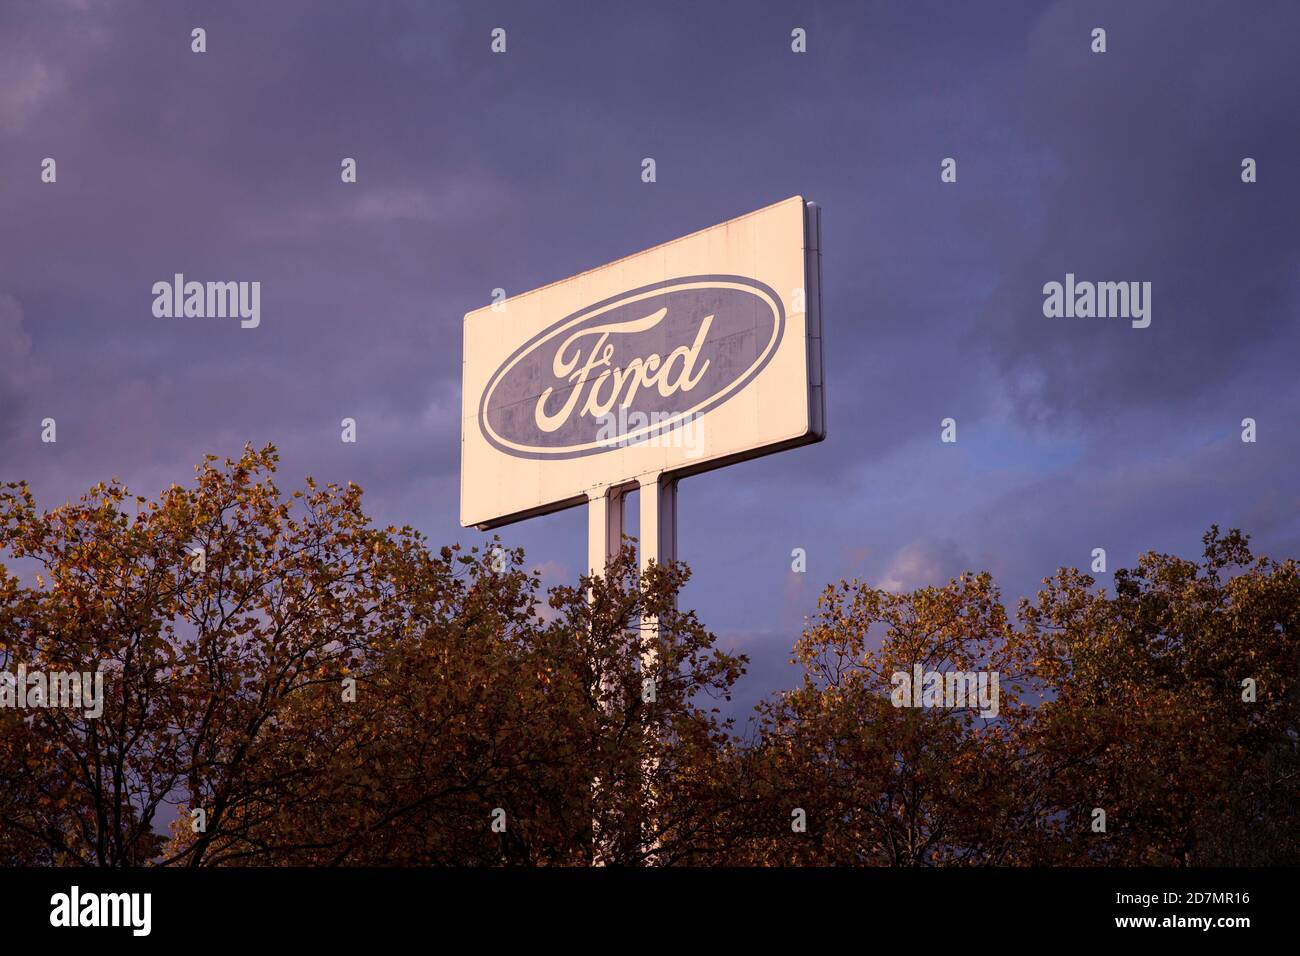 Grand panneau publicitaire à l'usine automobile Ford dans la ville, quartier de Niehl, Cologne, Allemagne. grosses Werbeschild an den Ford-Werken dans Niehl, Banque D'Images